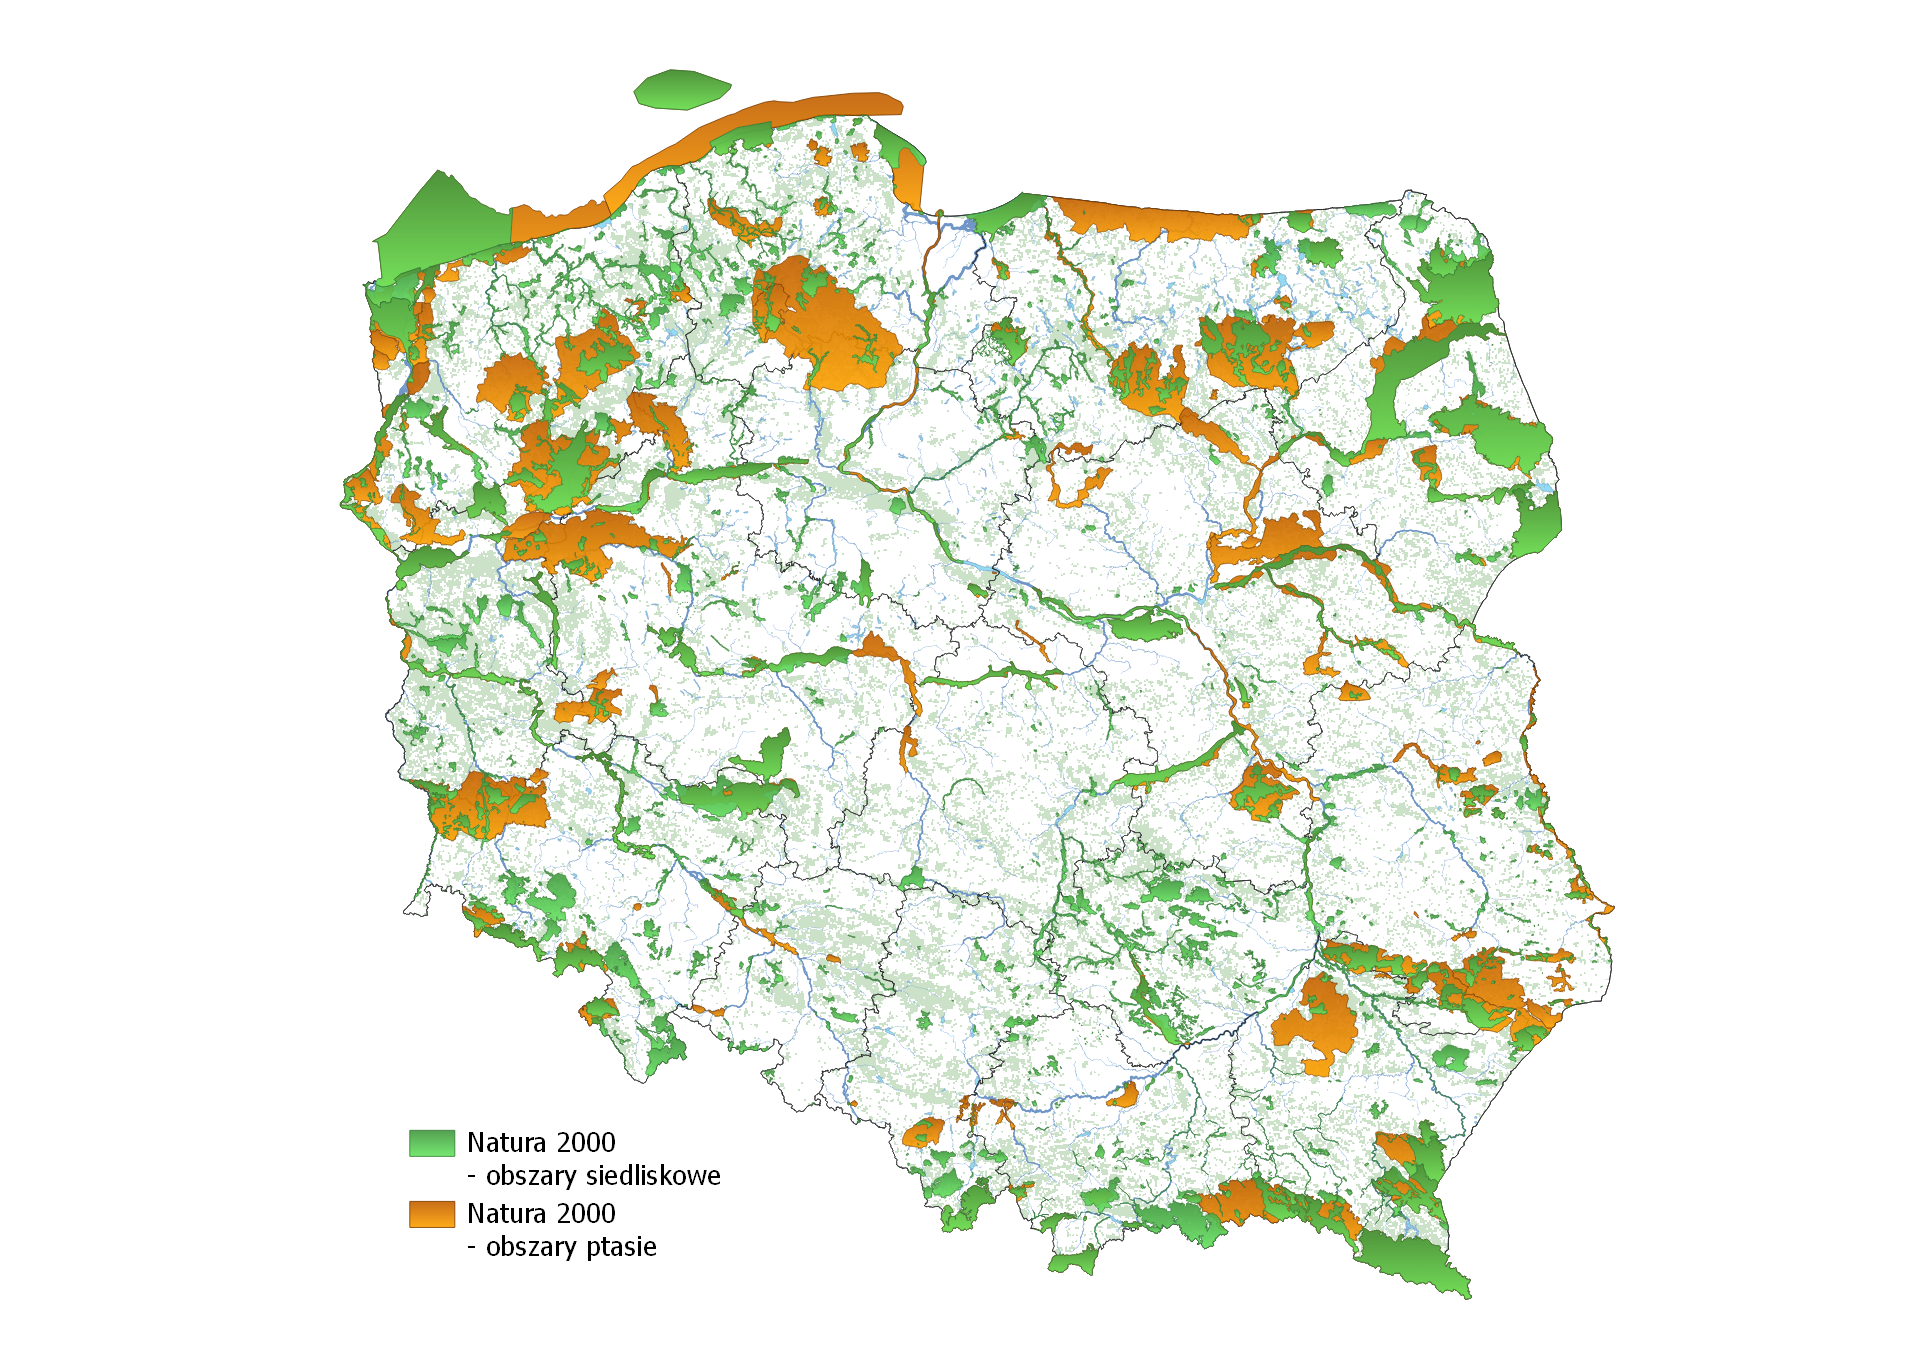 Mapa Natura 2000 - prezentuje obszary siedliskowe oraz obszary ptasie